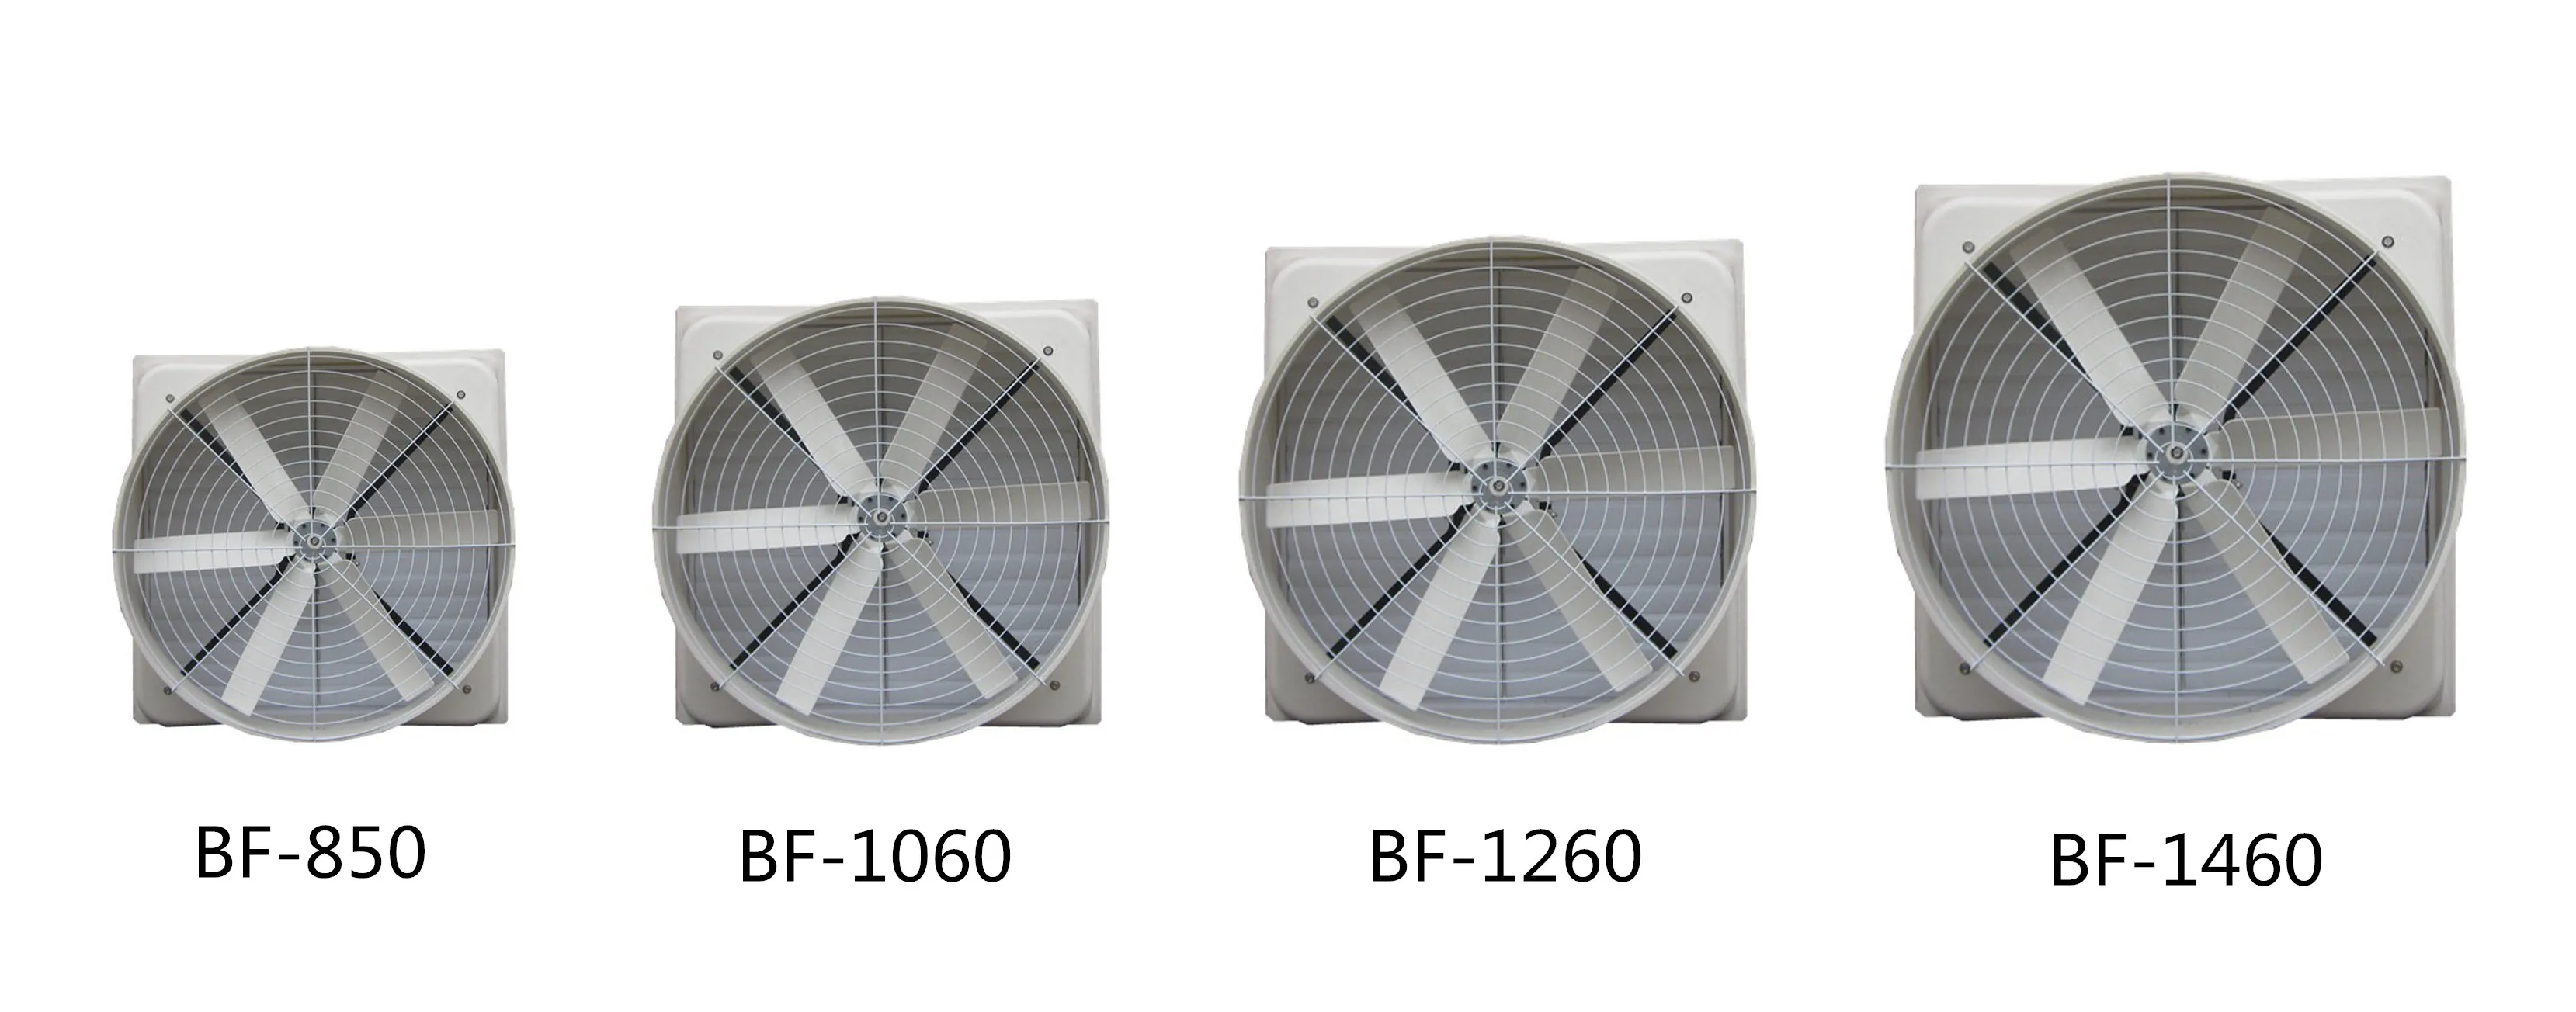 Best Sale Industrial Wall Fan Thermostat Controlled Exhaust Fan Buy Exhaust Fan With Thermostat